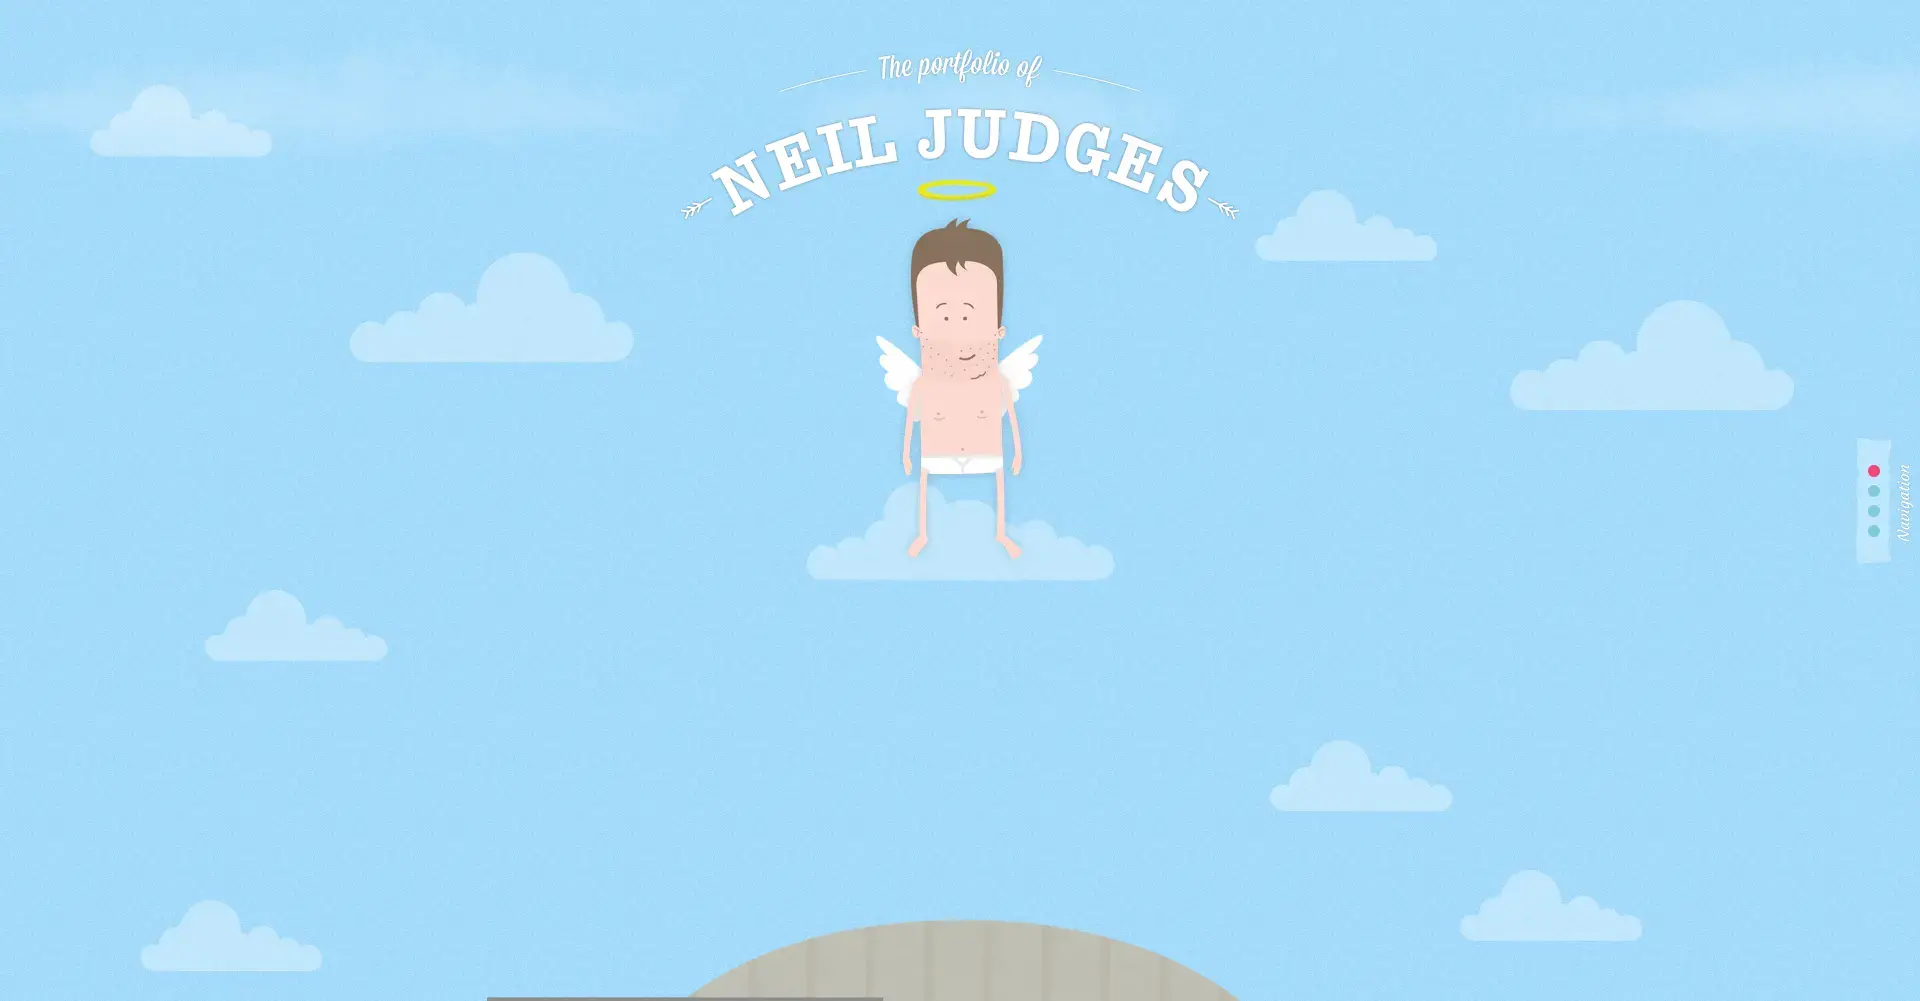 Neil judges